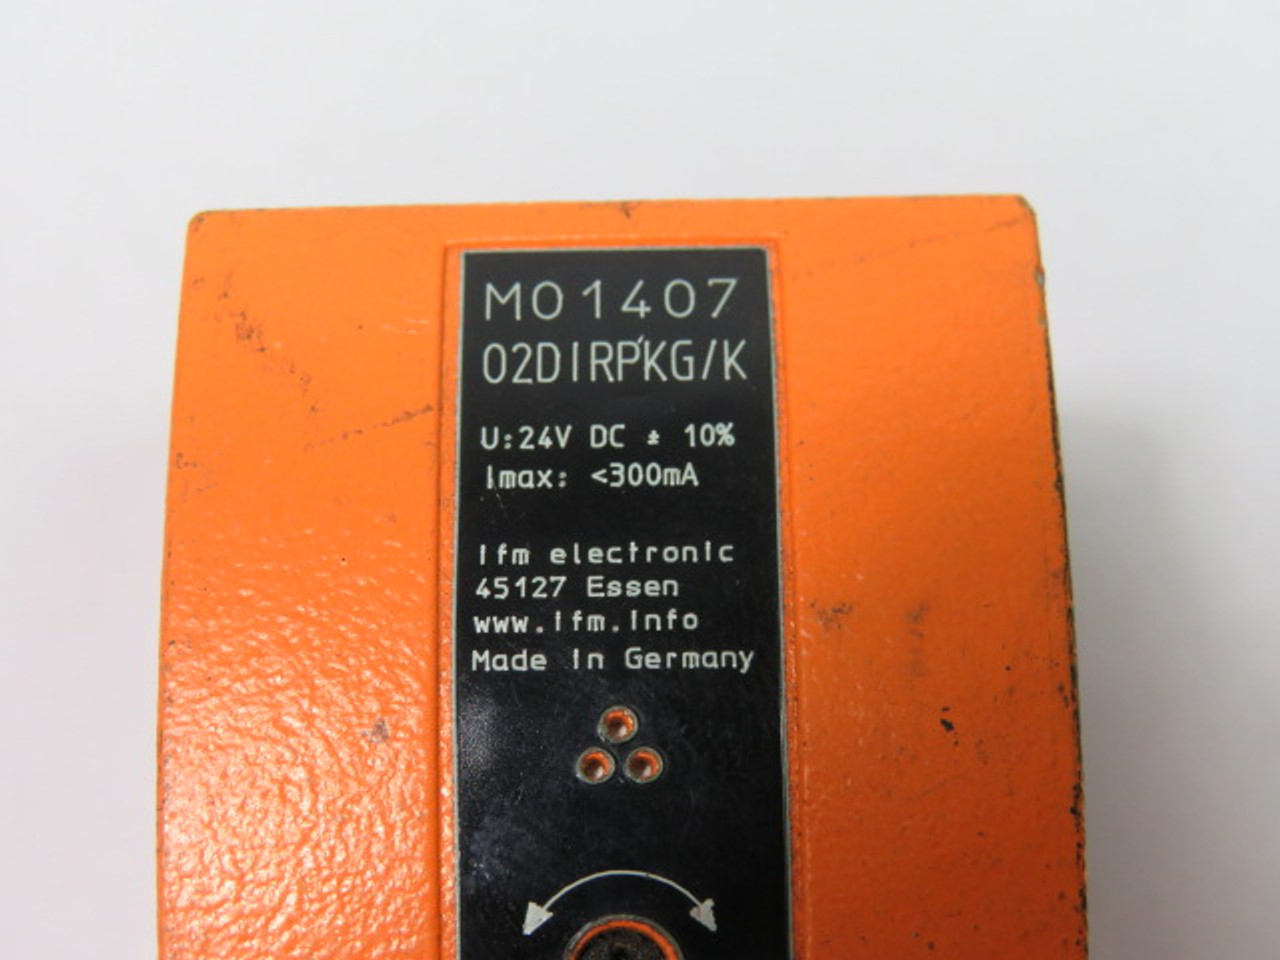 IFM O2DIRPKG/K-M01407 Object Recognition Sensor 24 Volt 8 Pin *COS Wear* USED